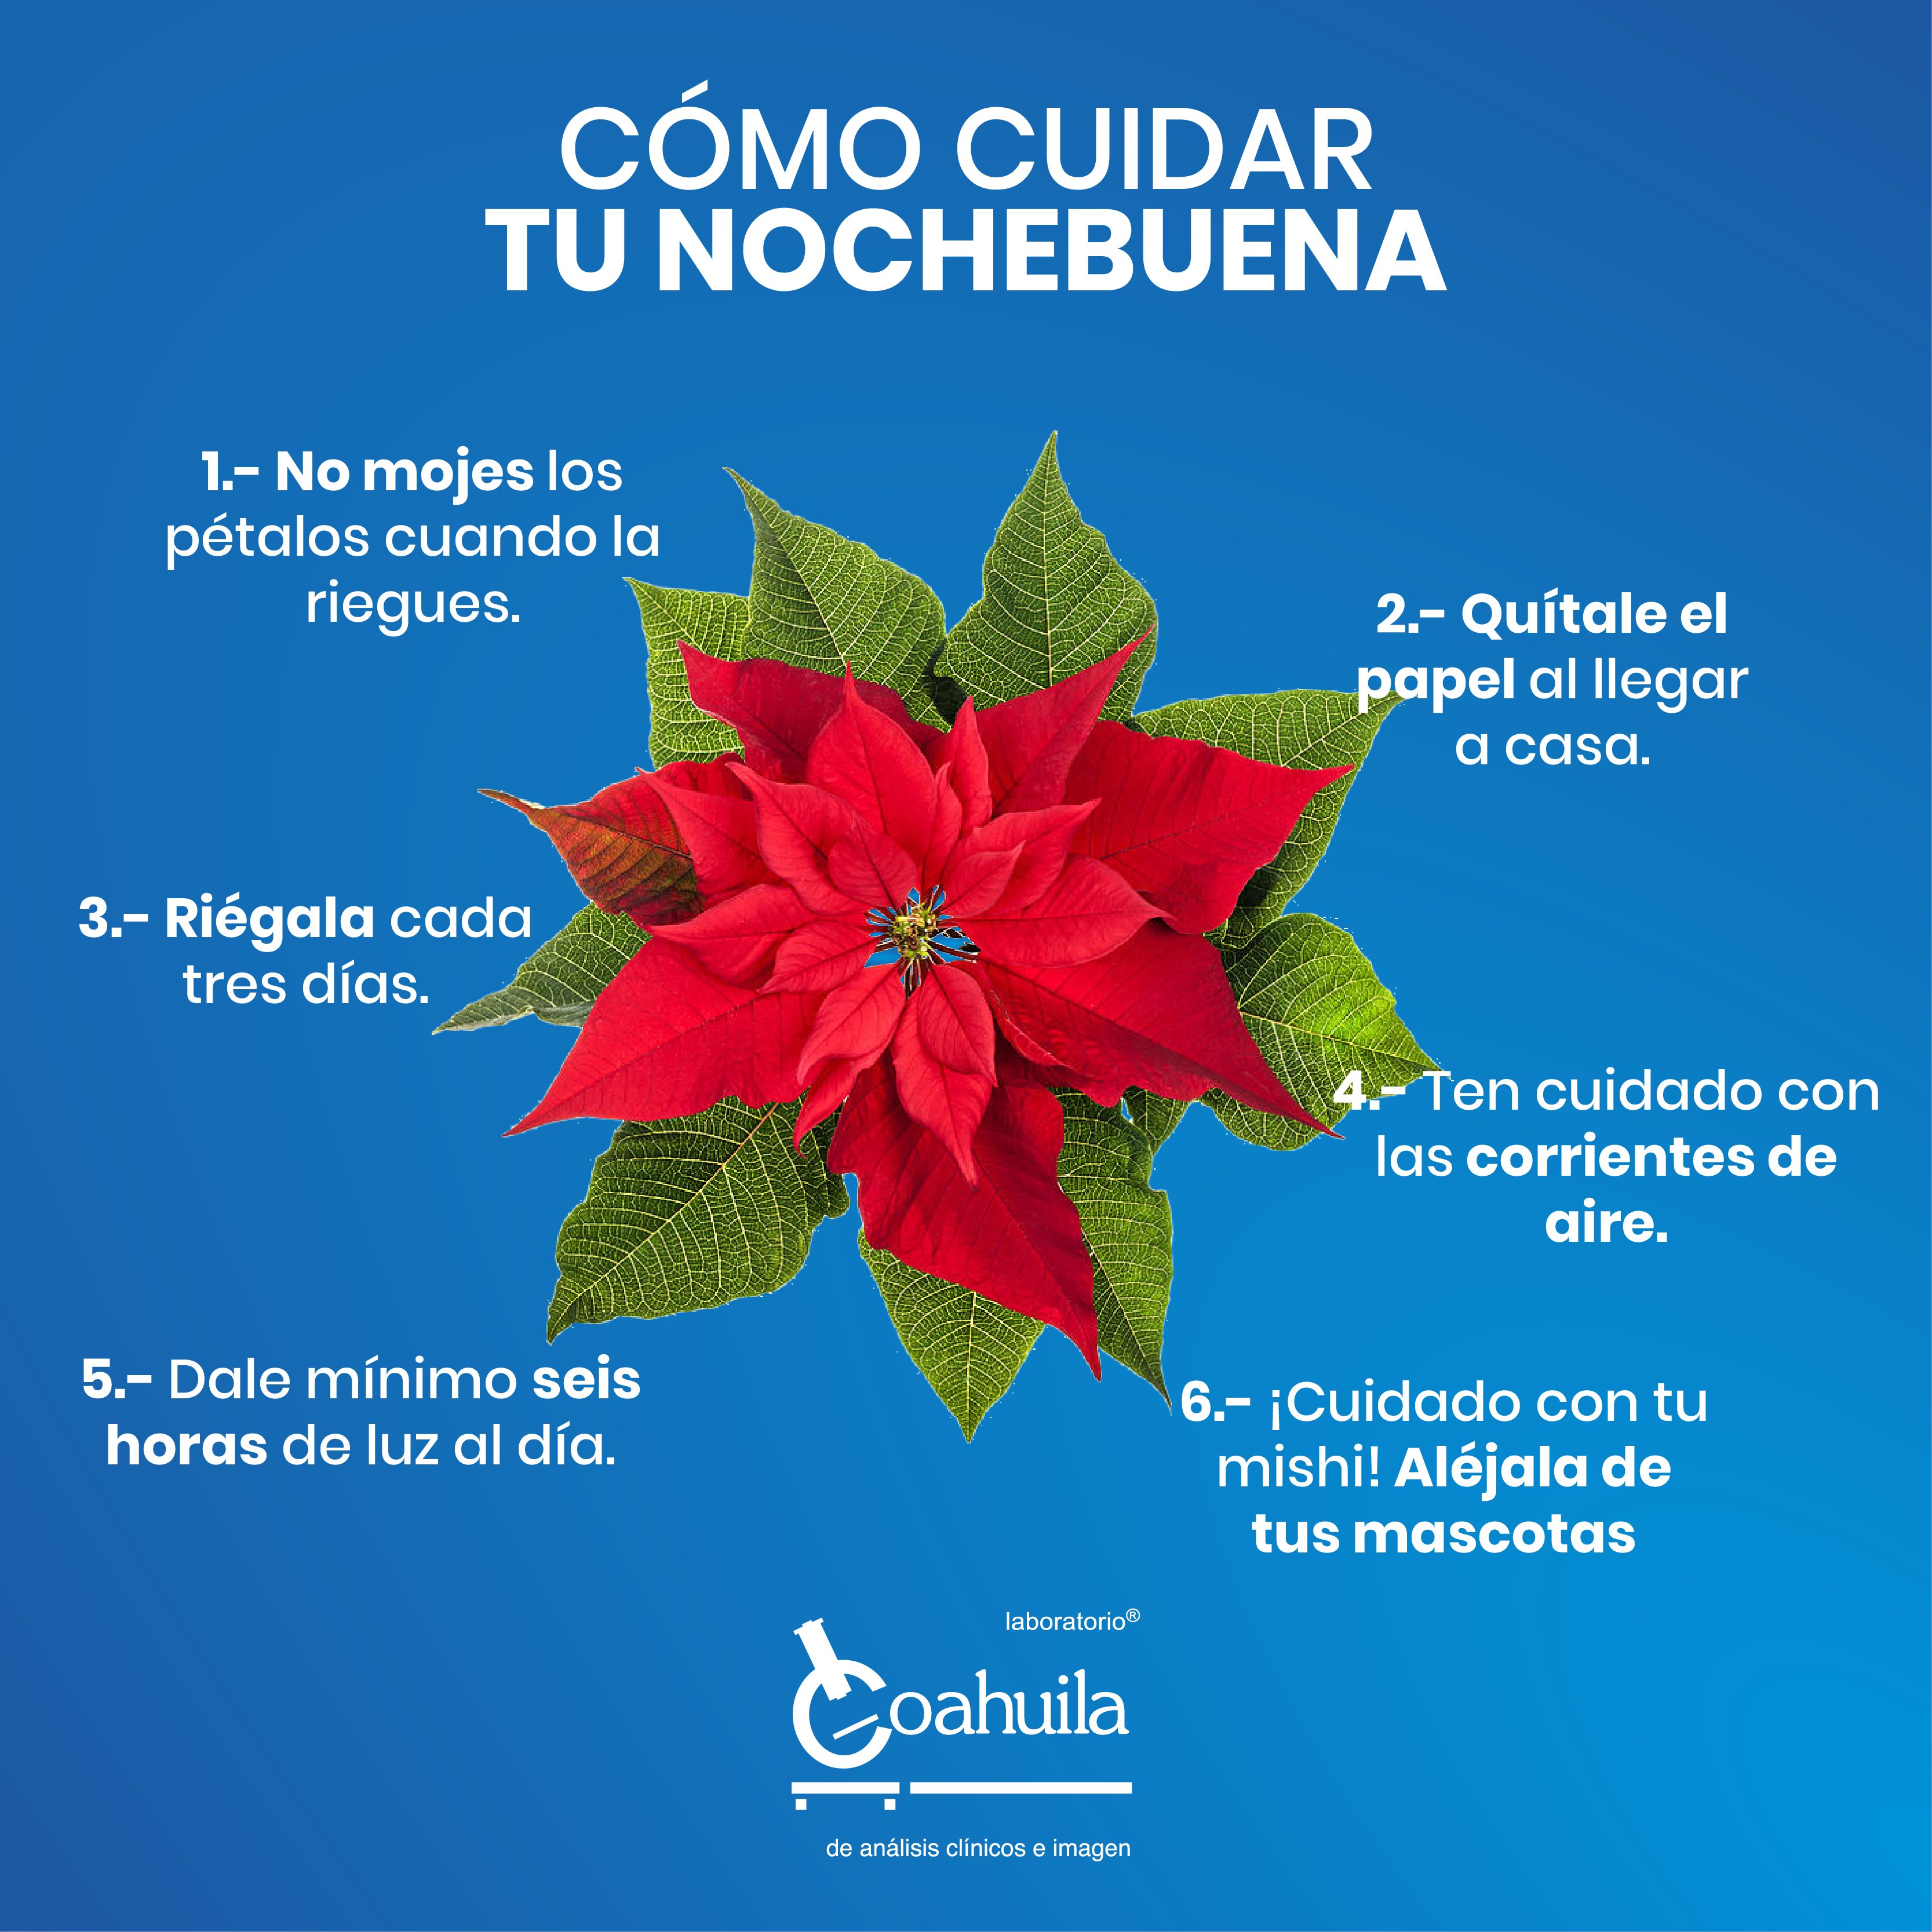 Racional Estimar ponerse en cuclillas Laboratorio Coahuila on Twitter: "🌺 En México, la Flor de Nochebuena es  una de las plantas más conocidas, duraderas y predilectas de las fiestas  decembrinas❄️🎄 Te contamos como cuidarla 😉 #Nochebuena #Cuidados #